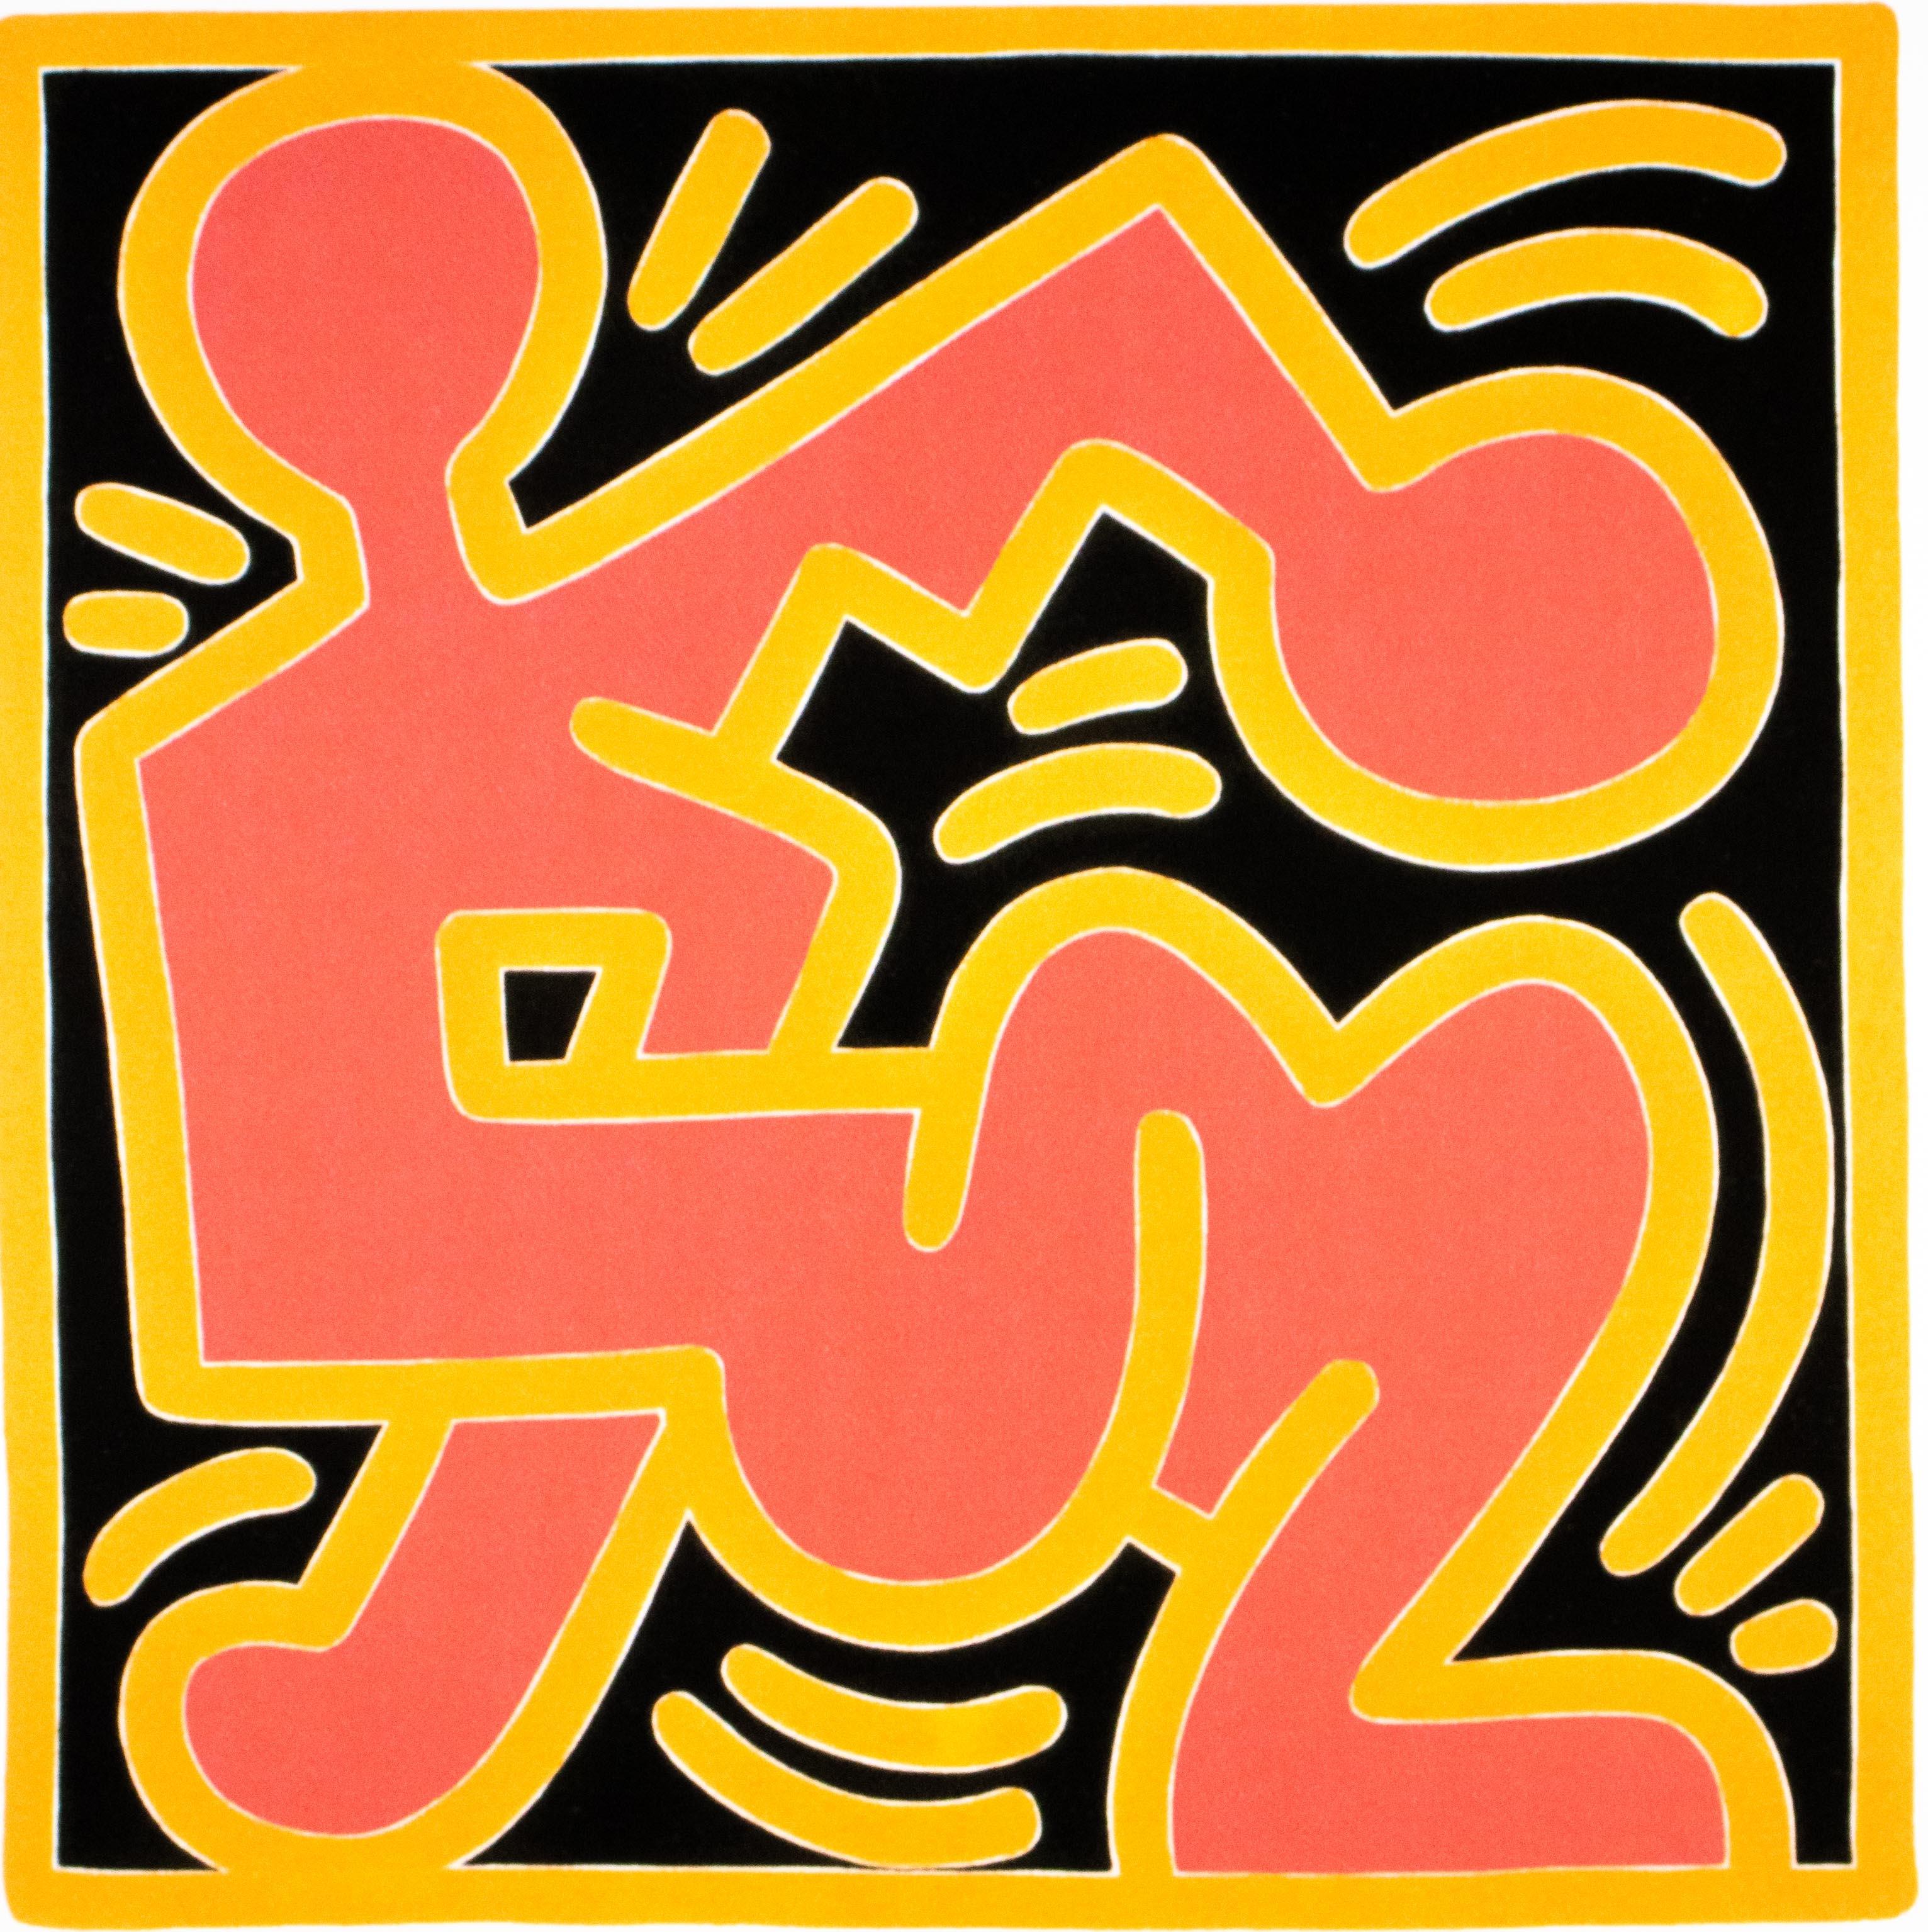 KEITH HARING - Sans titre
Édition limitée des années 1990 par la Keith Haring Foundation, Inc.

Seulement 150 exemplaires au total (ici 15/150).
Lithographie sur carton épais.

Signé dans la plaque.
Édition numérotée à la main au crayon.
Avec le